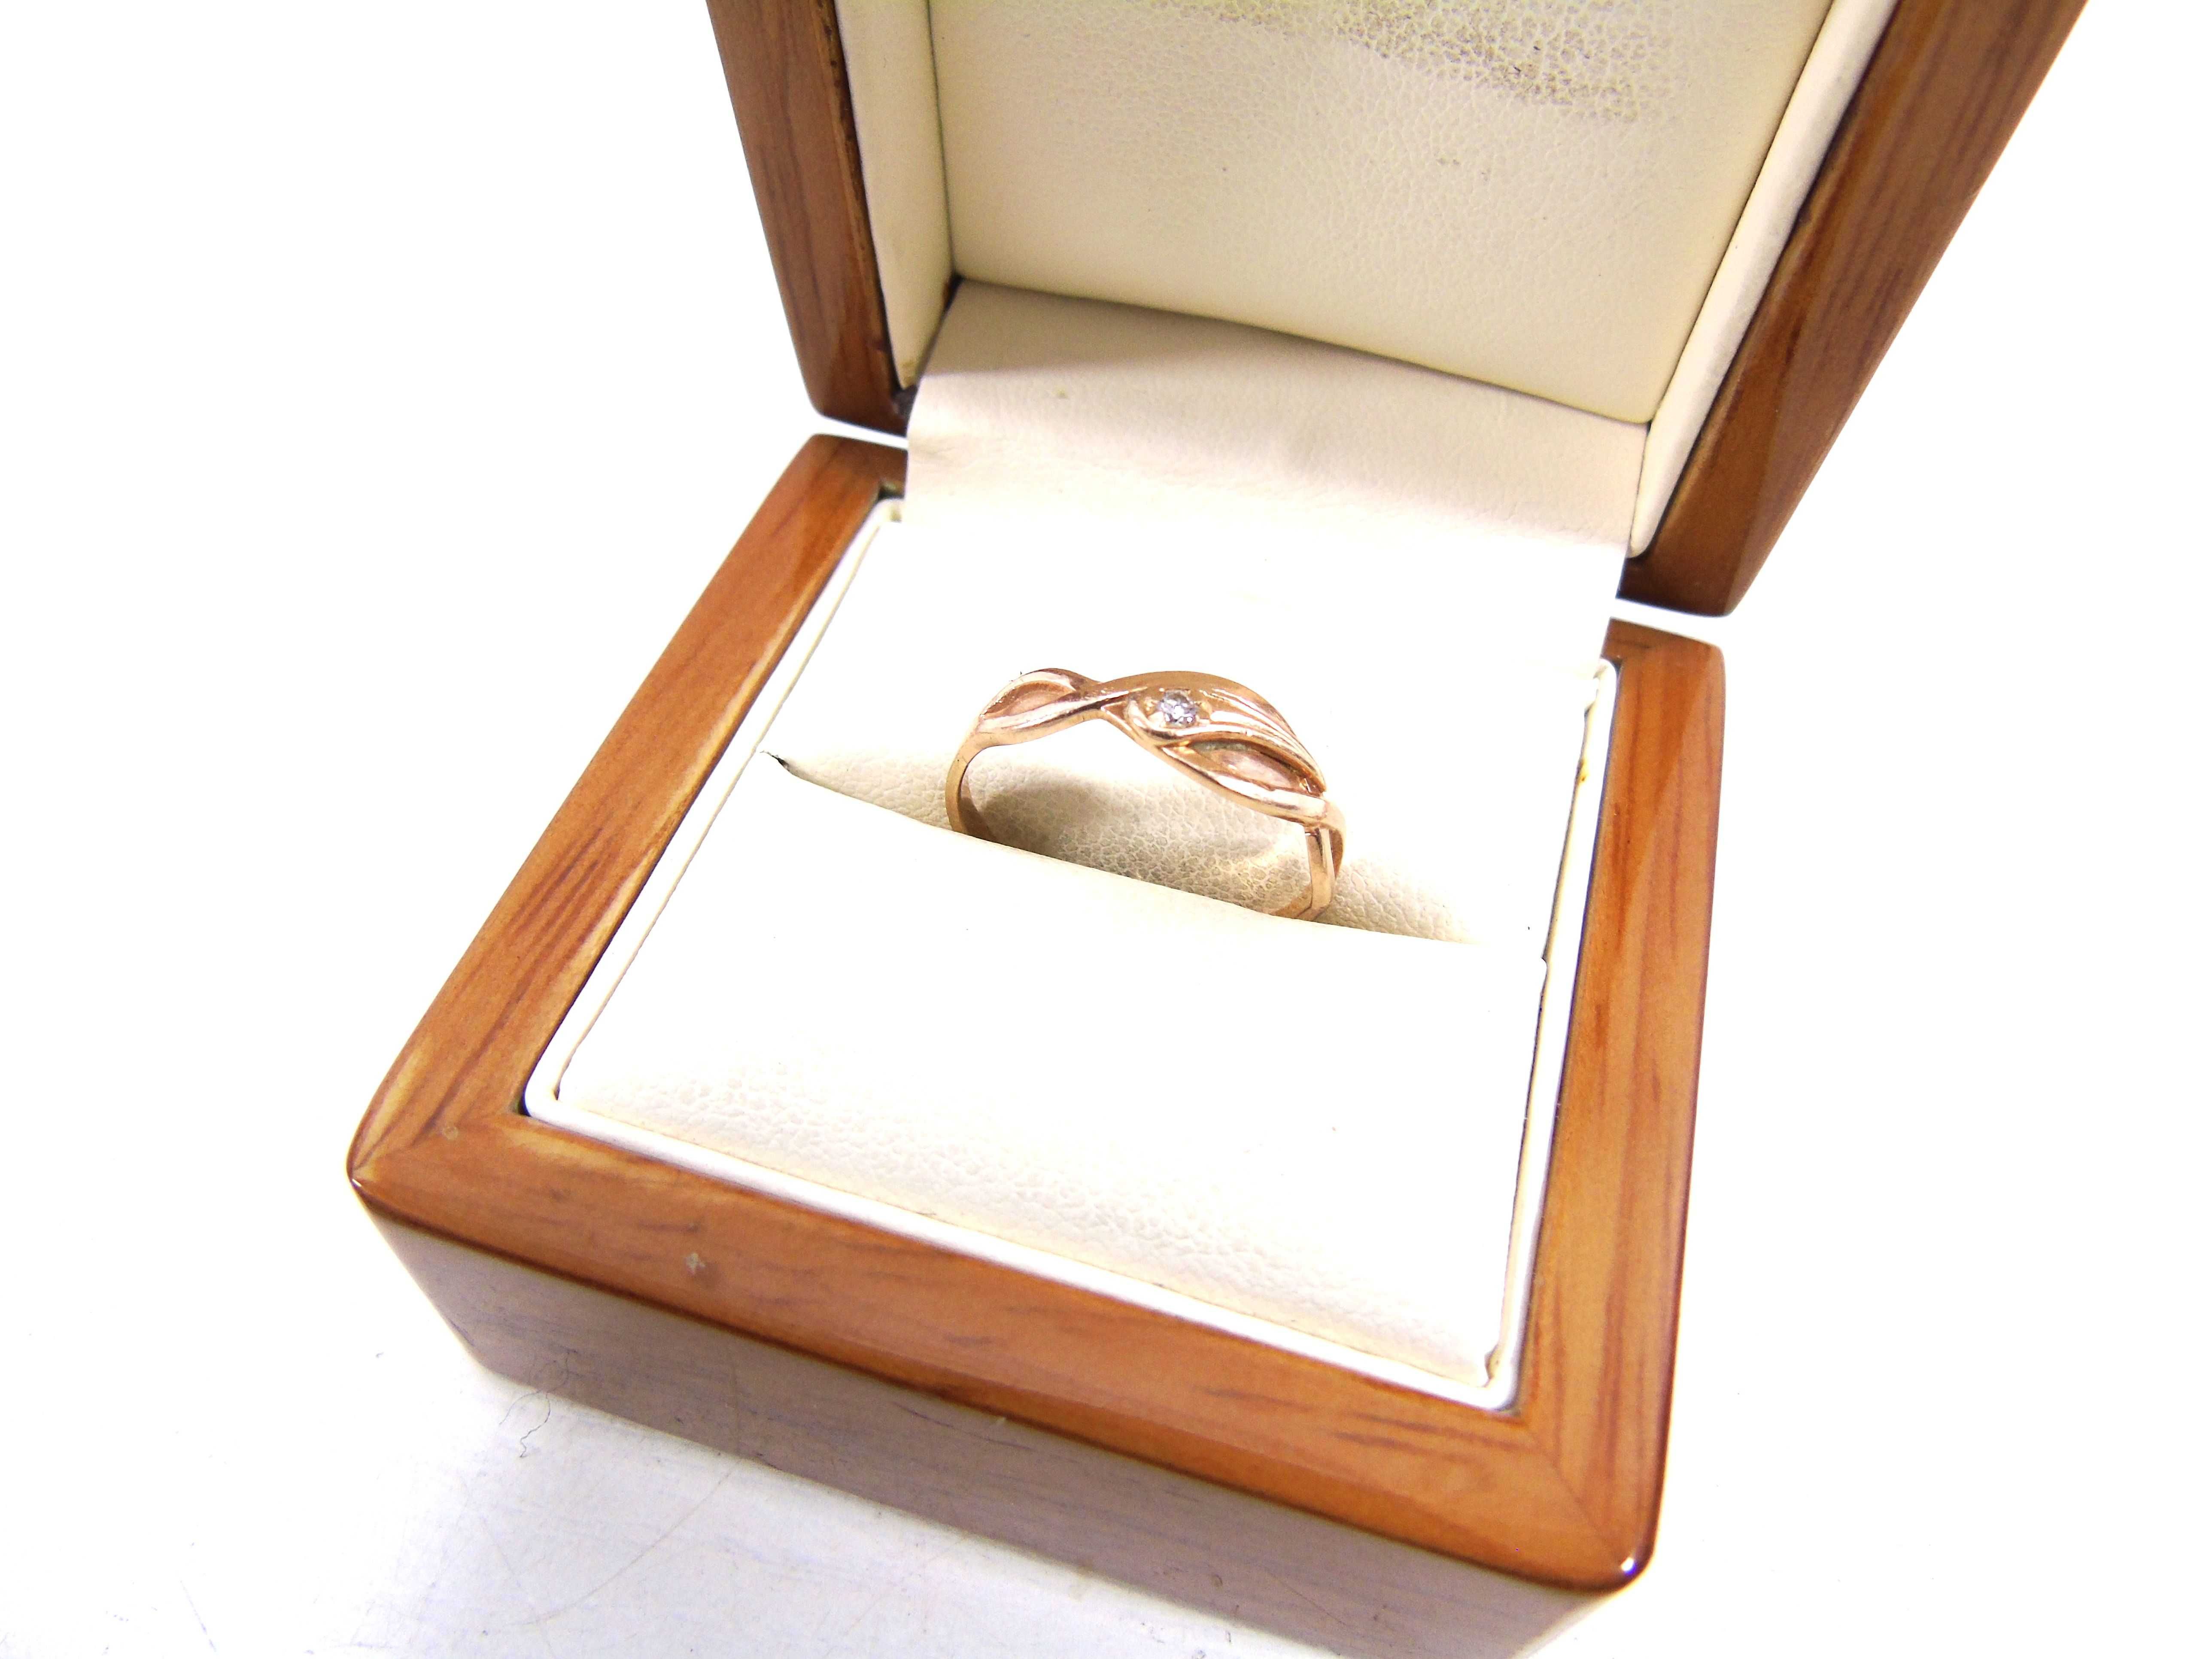 Złoty pierścionek pr.585 r.18 Lombard Żuromin Loombard